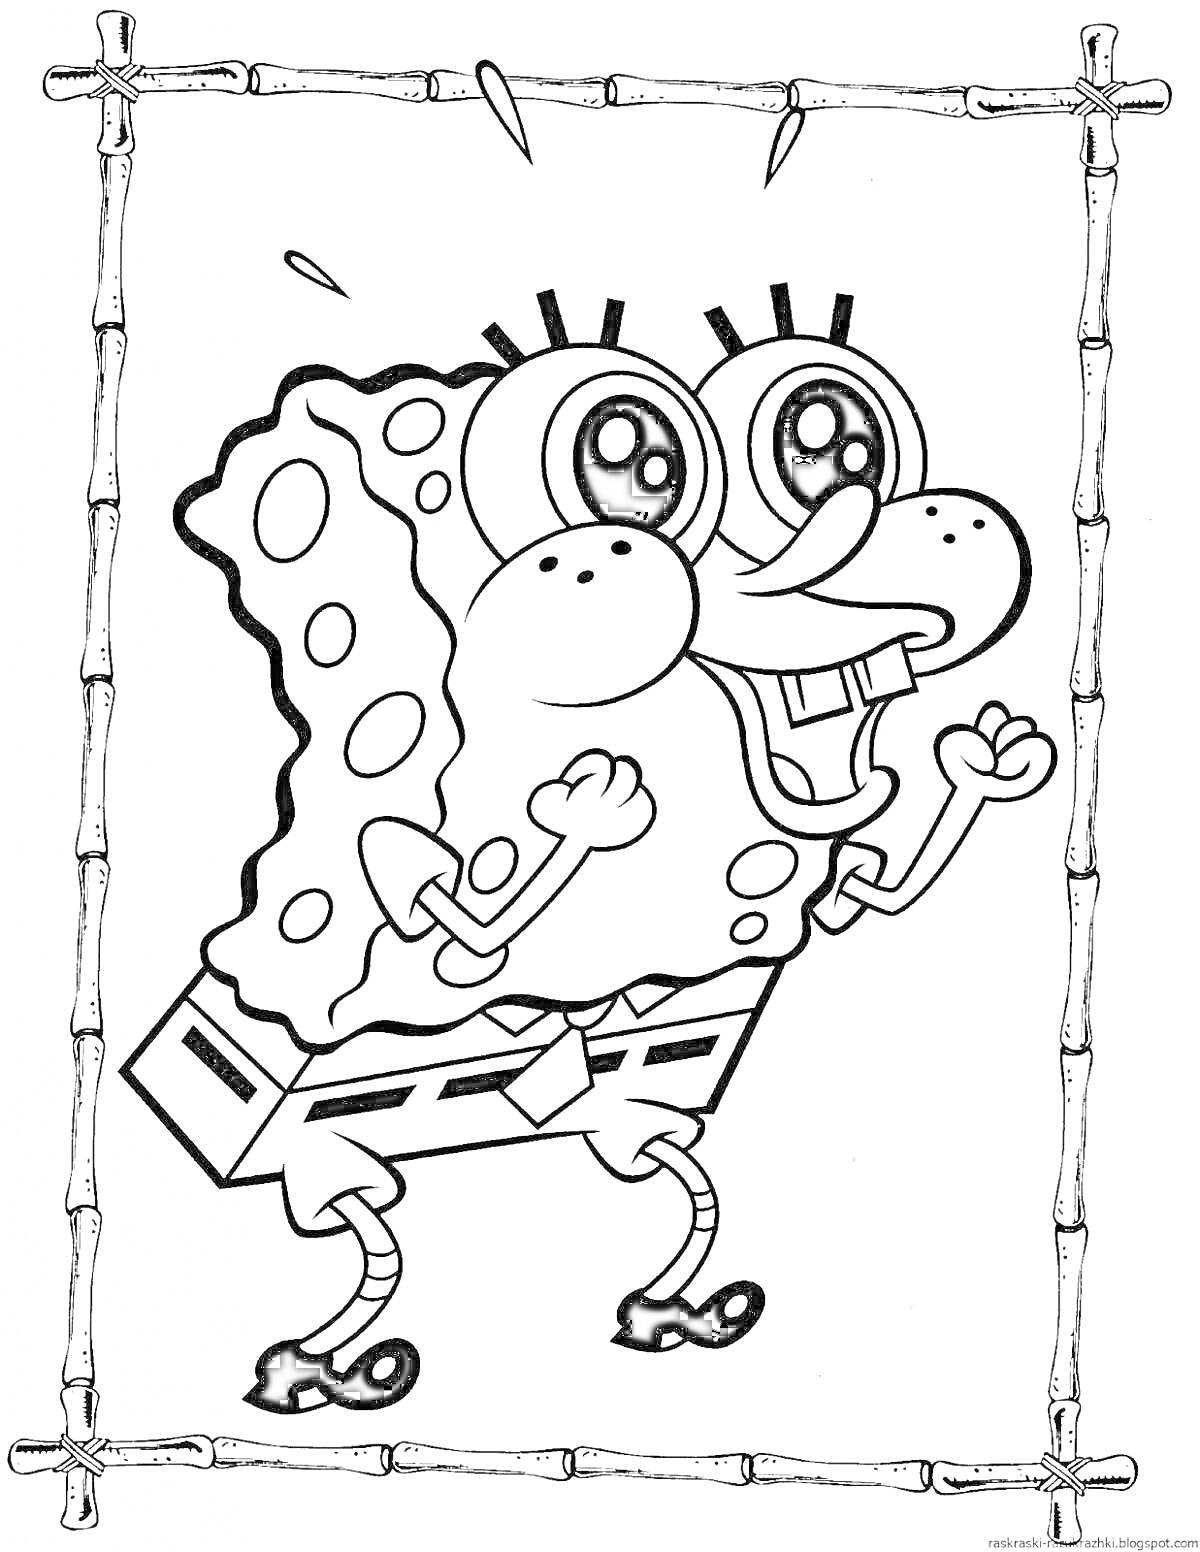 Раскраска Губка Боб с поднятыми руками в деревянной рамке